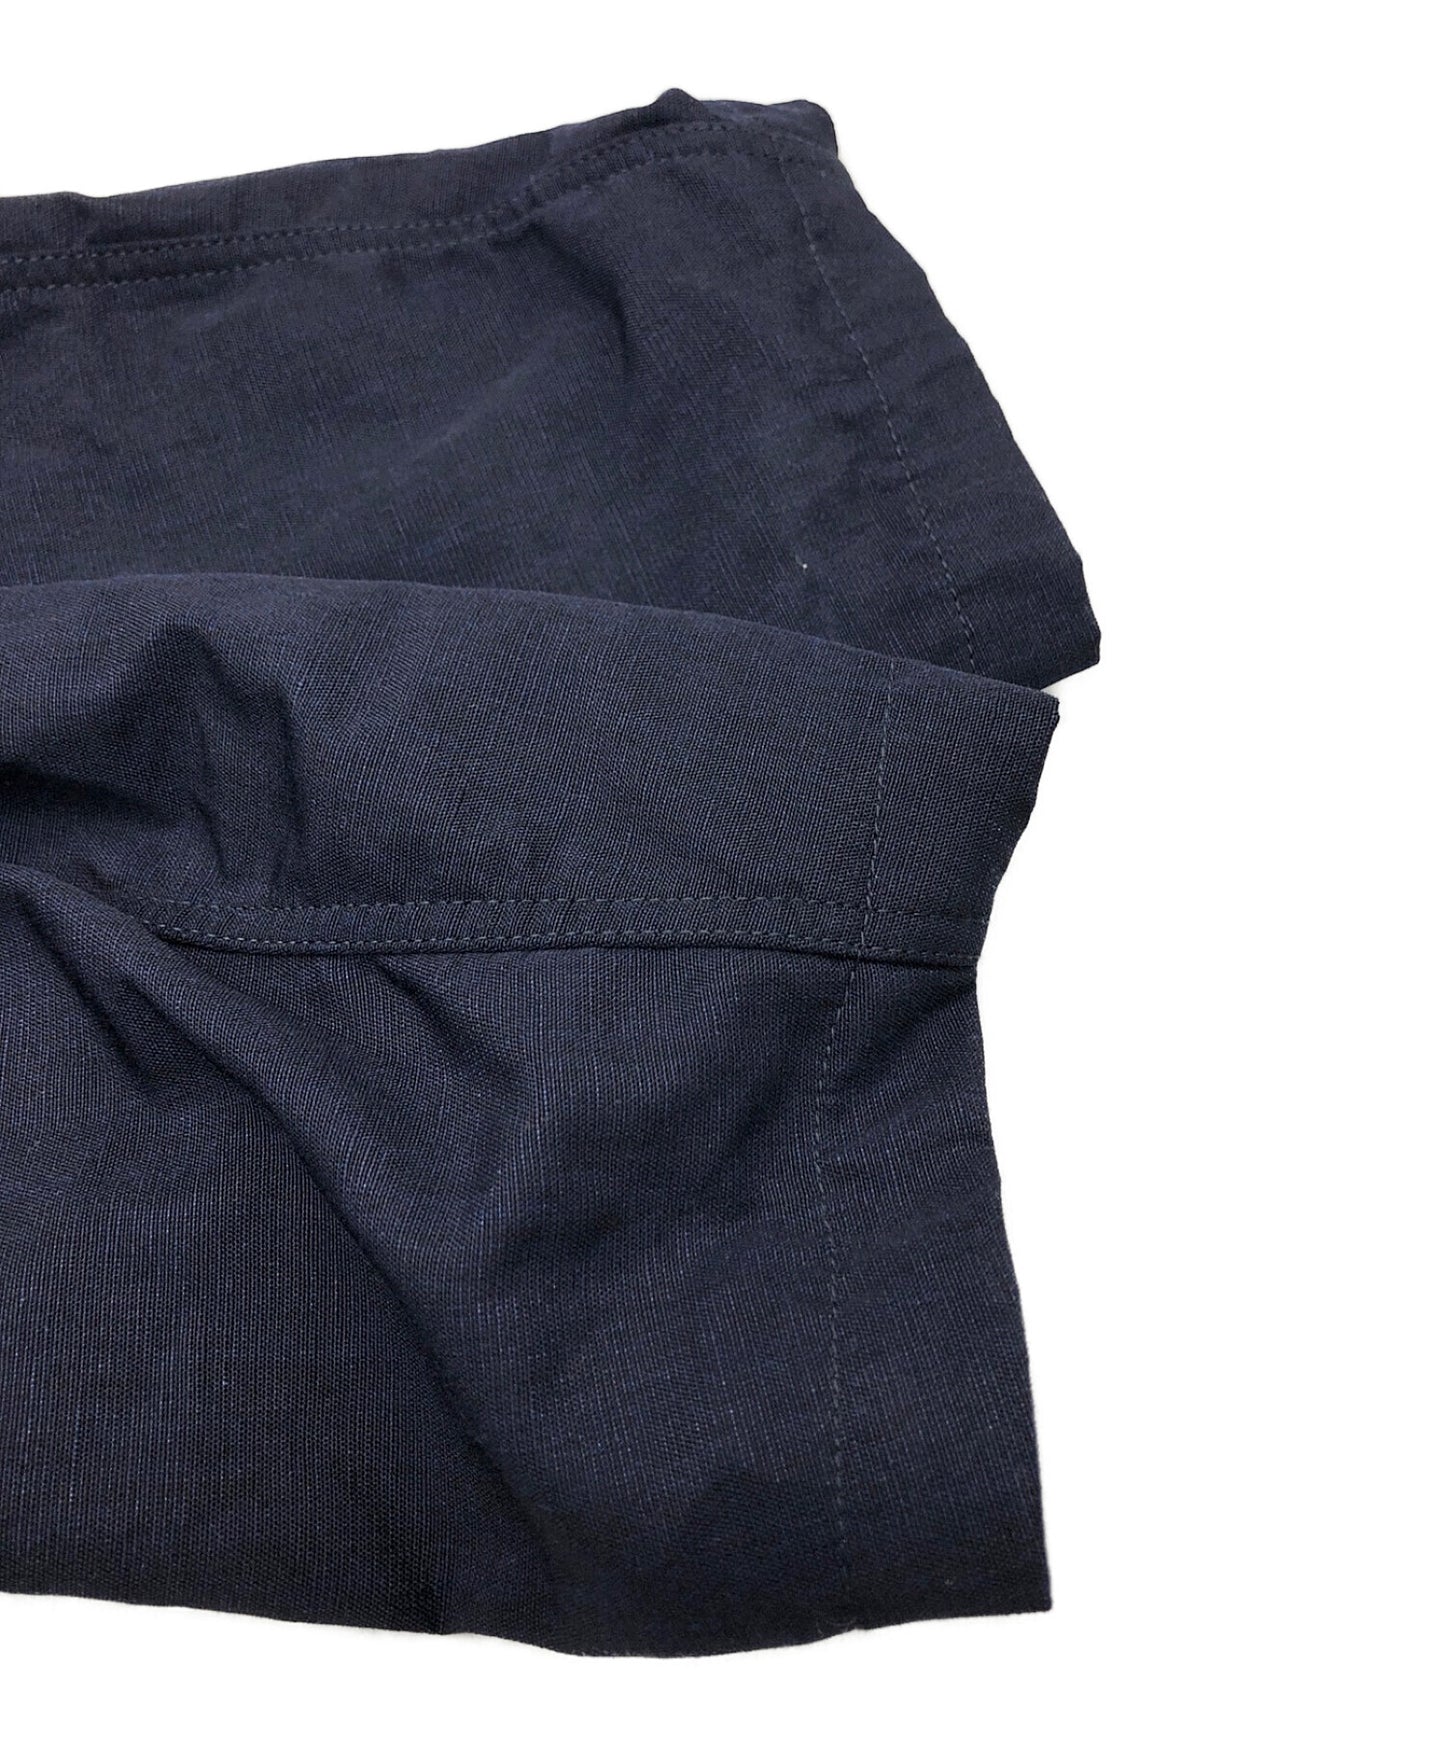 [Pre-owned] JUNYA WATANABE MAN Reversible Wool Linen Jacket WI-J002